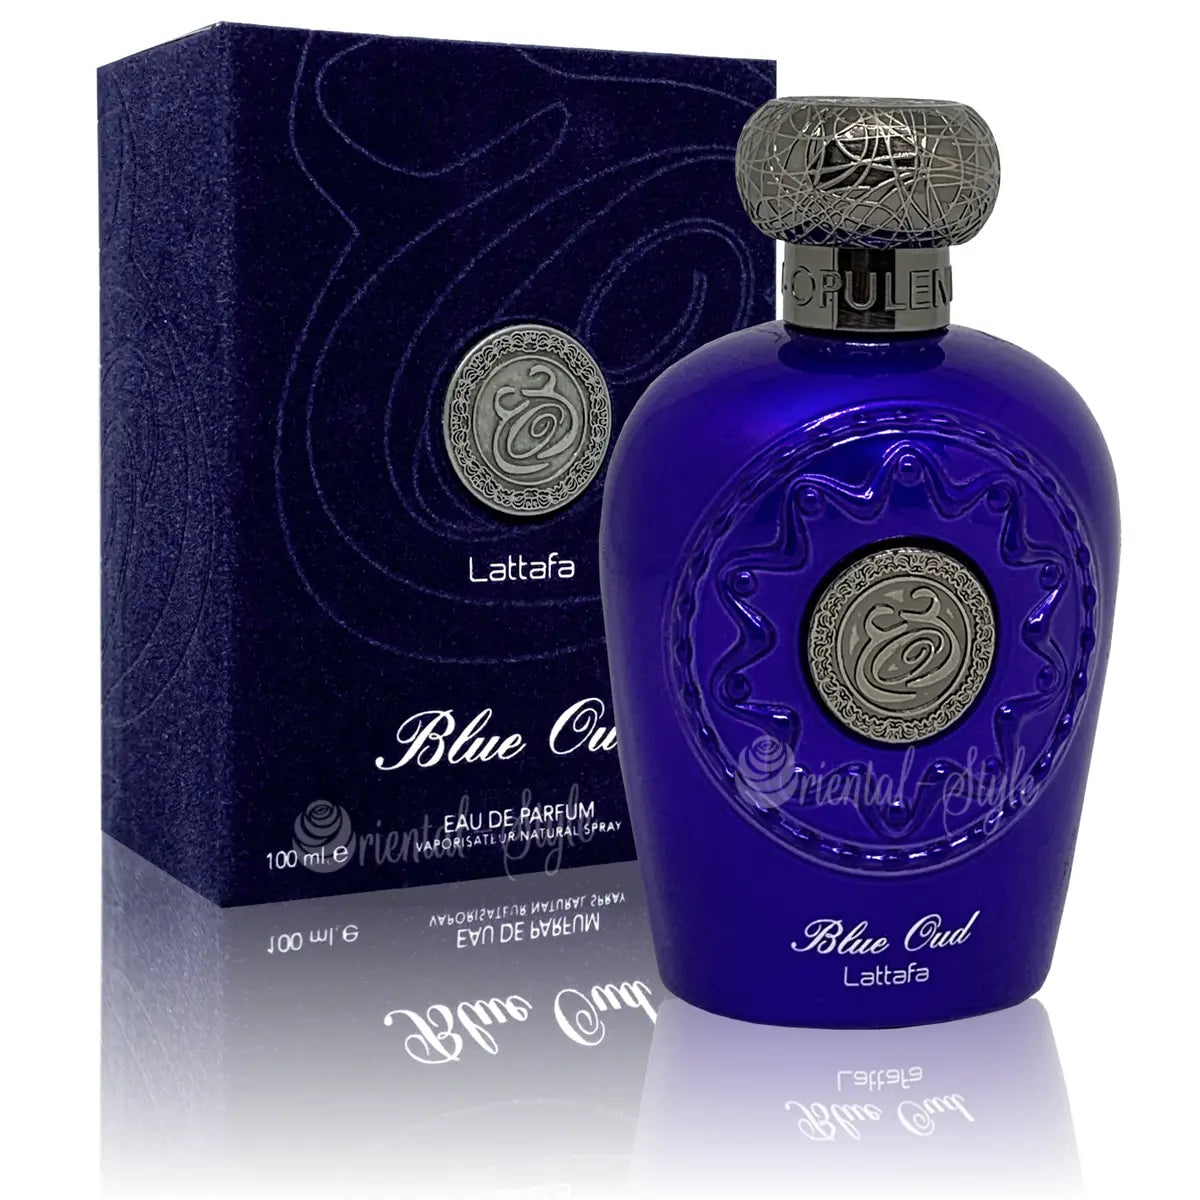 Lattafa Opulent Blue Oud - 100ml Eau De Parfum Lattafa